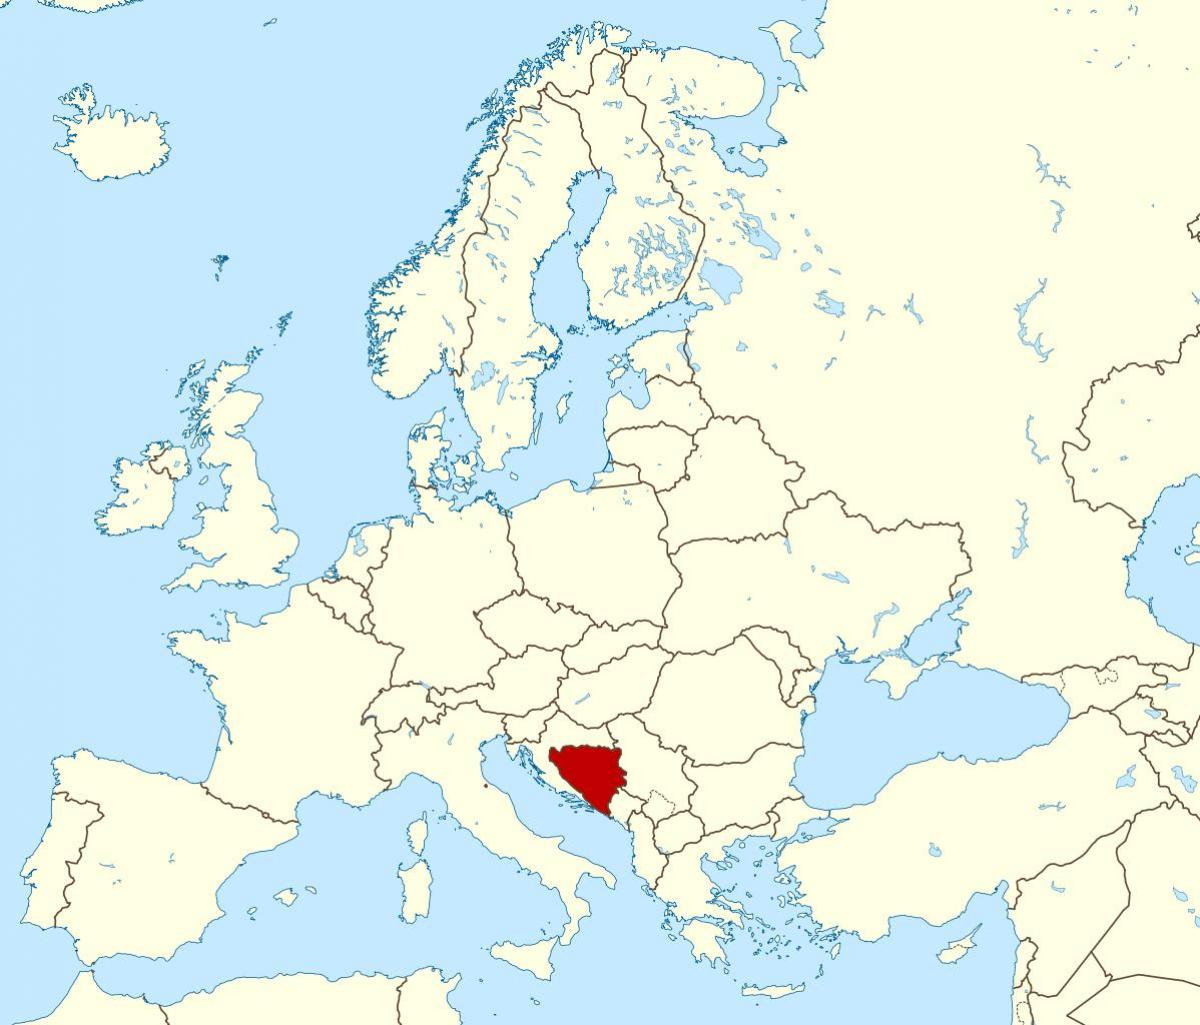 Bosnia and Herzegovina on world map